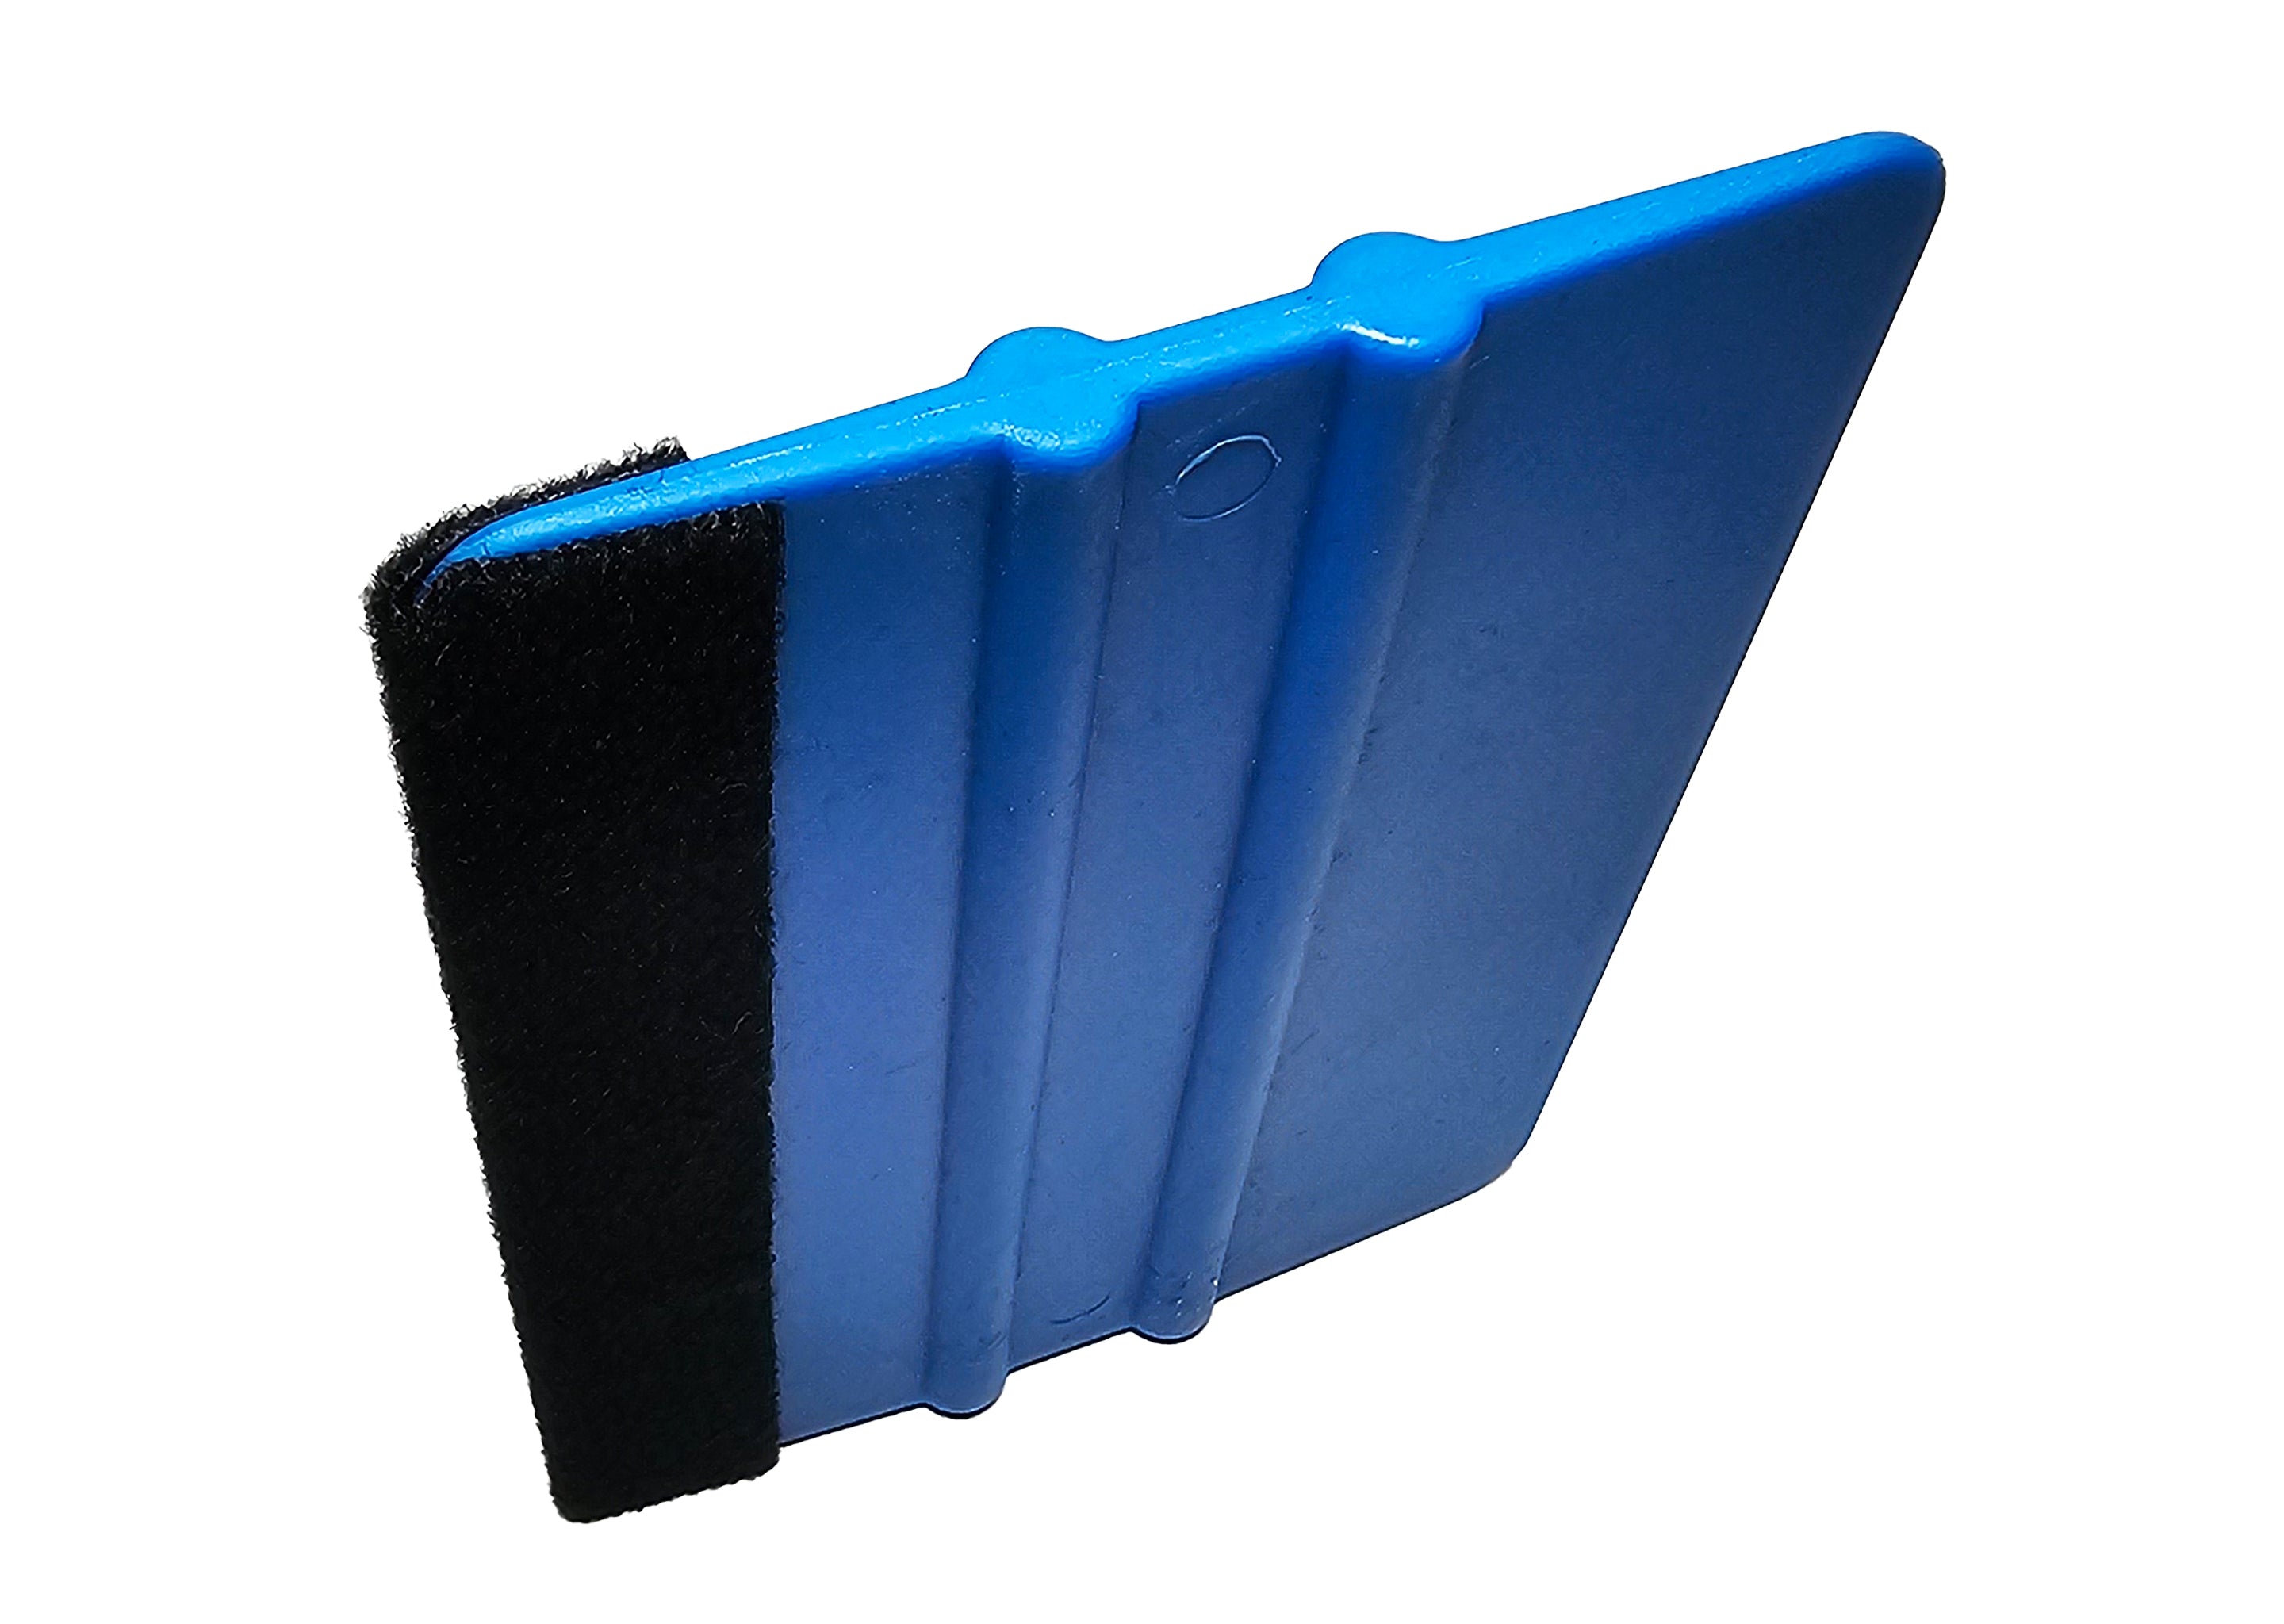 Filzrakel Folienrakel für Wandtattoos und Klebefolien allgemein in blau 3 Stück